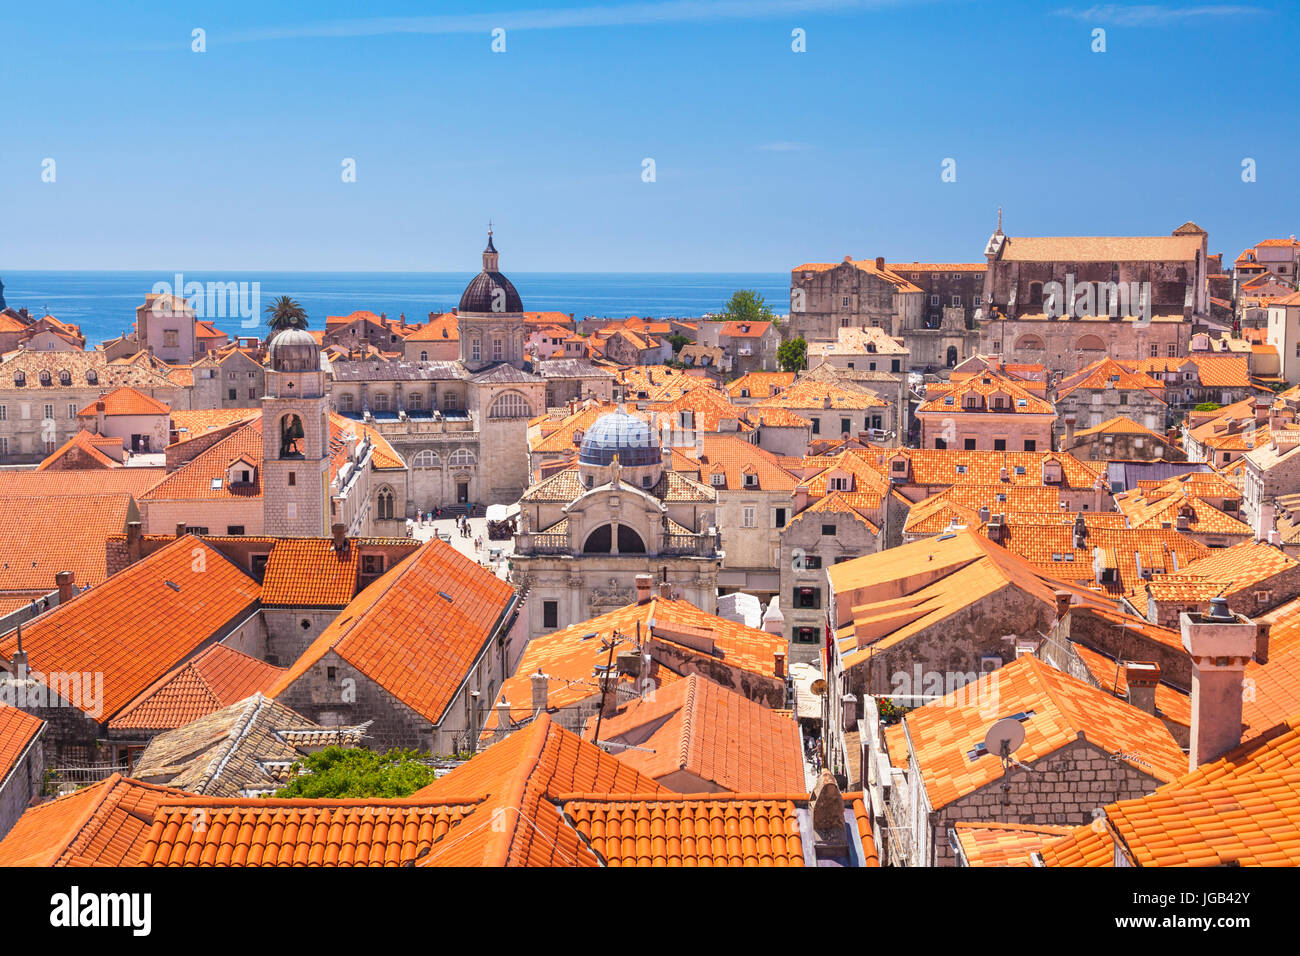 Croatie Dubrovnik Croatie côte Dalmate vue depuis les remparts de la ville de Tours les tuiles rouges des toits de la vieille ville la vieille ville de Dubrovnik Croatie Banque D'Images